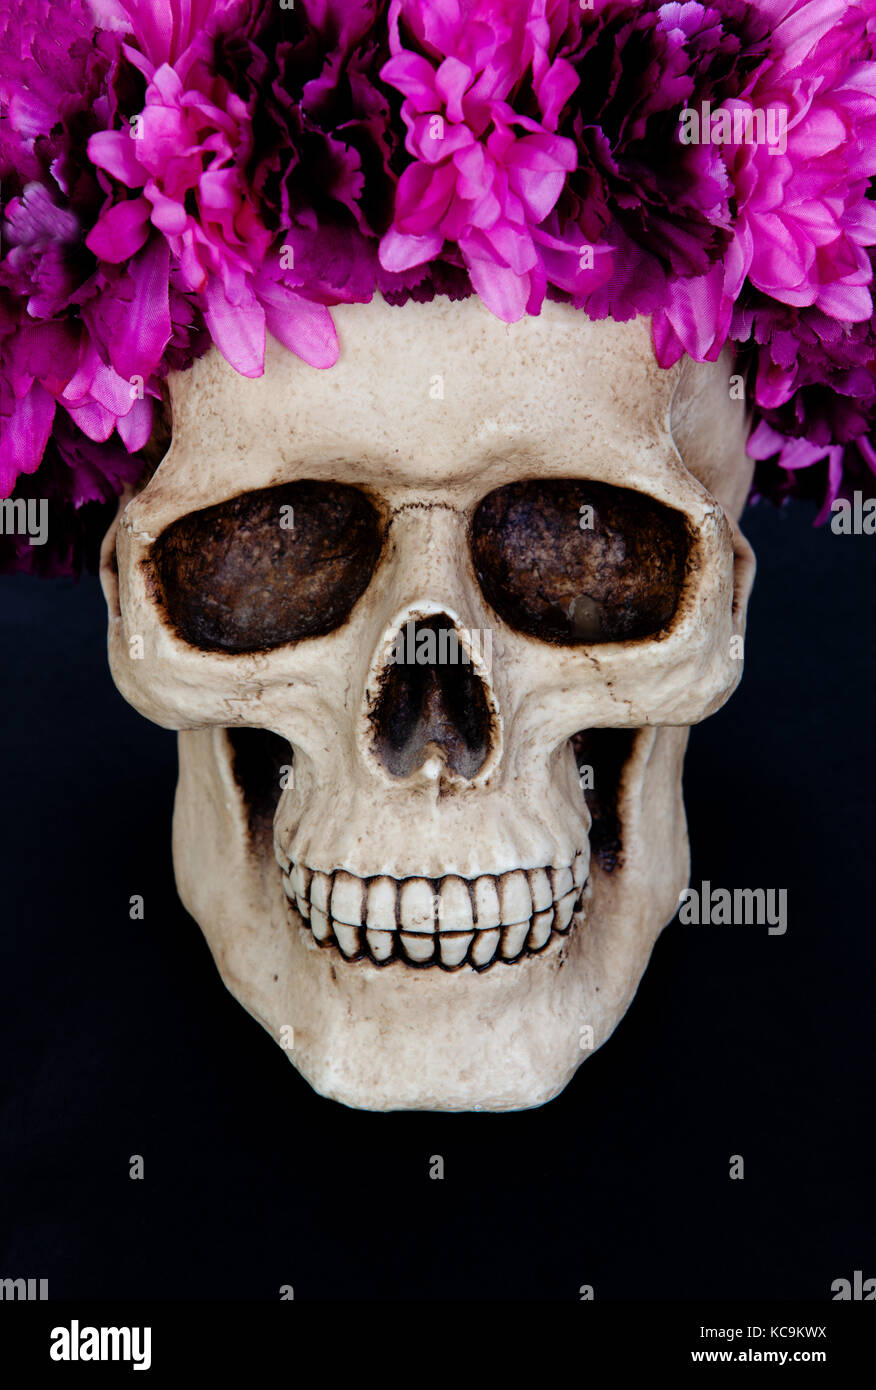 Crâne avec une guirlande de fleurs rose isolé sur un fond noir Banque D'Images